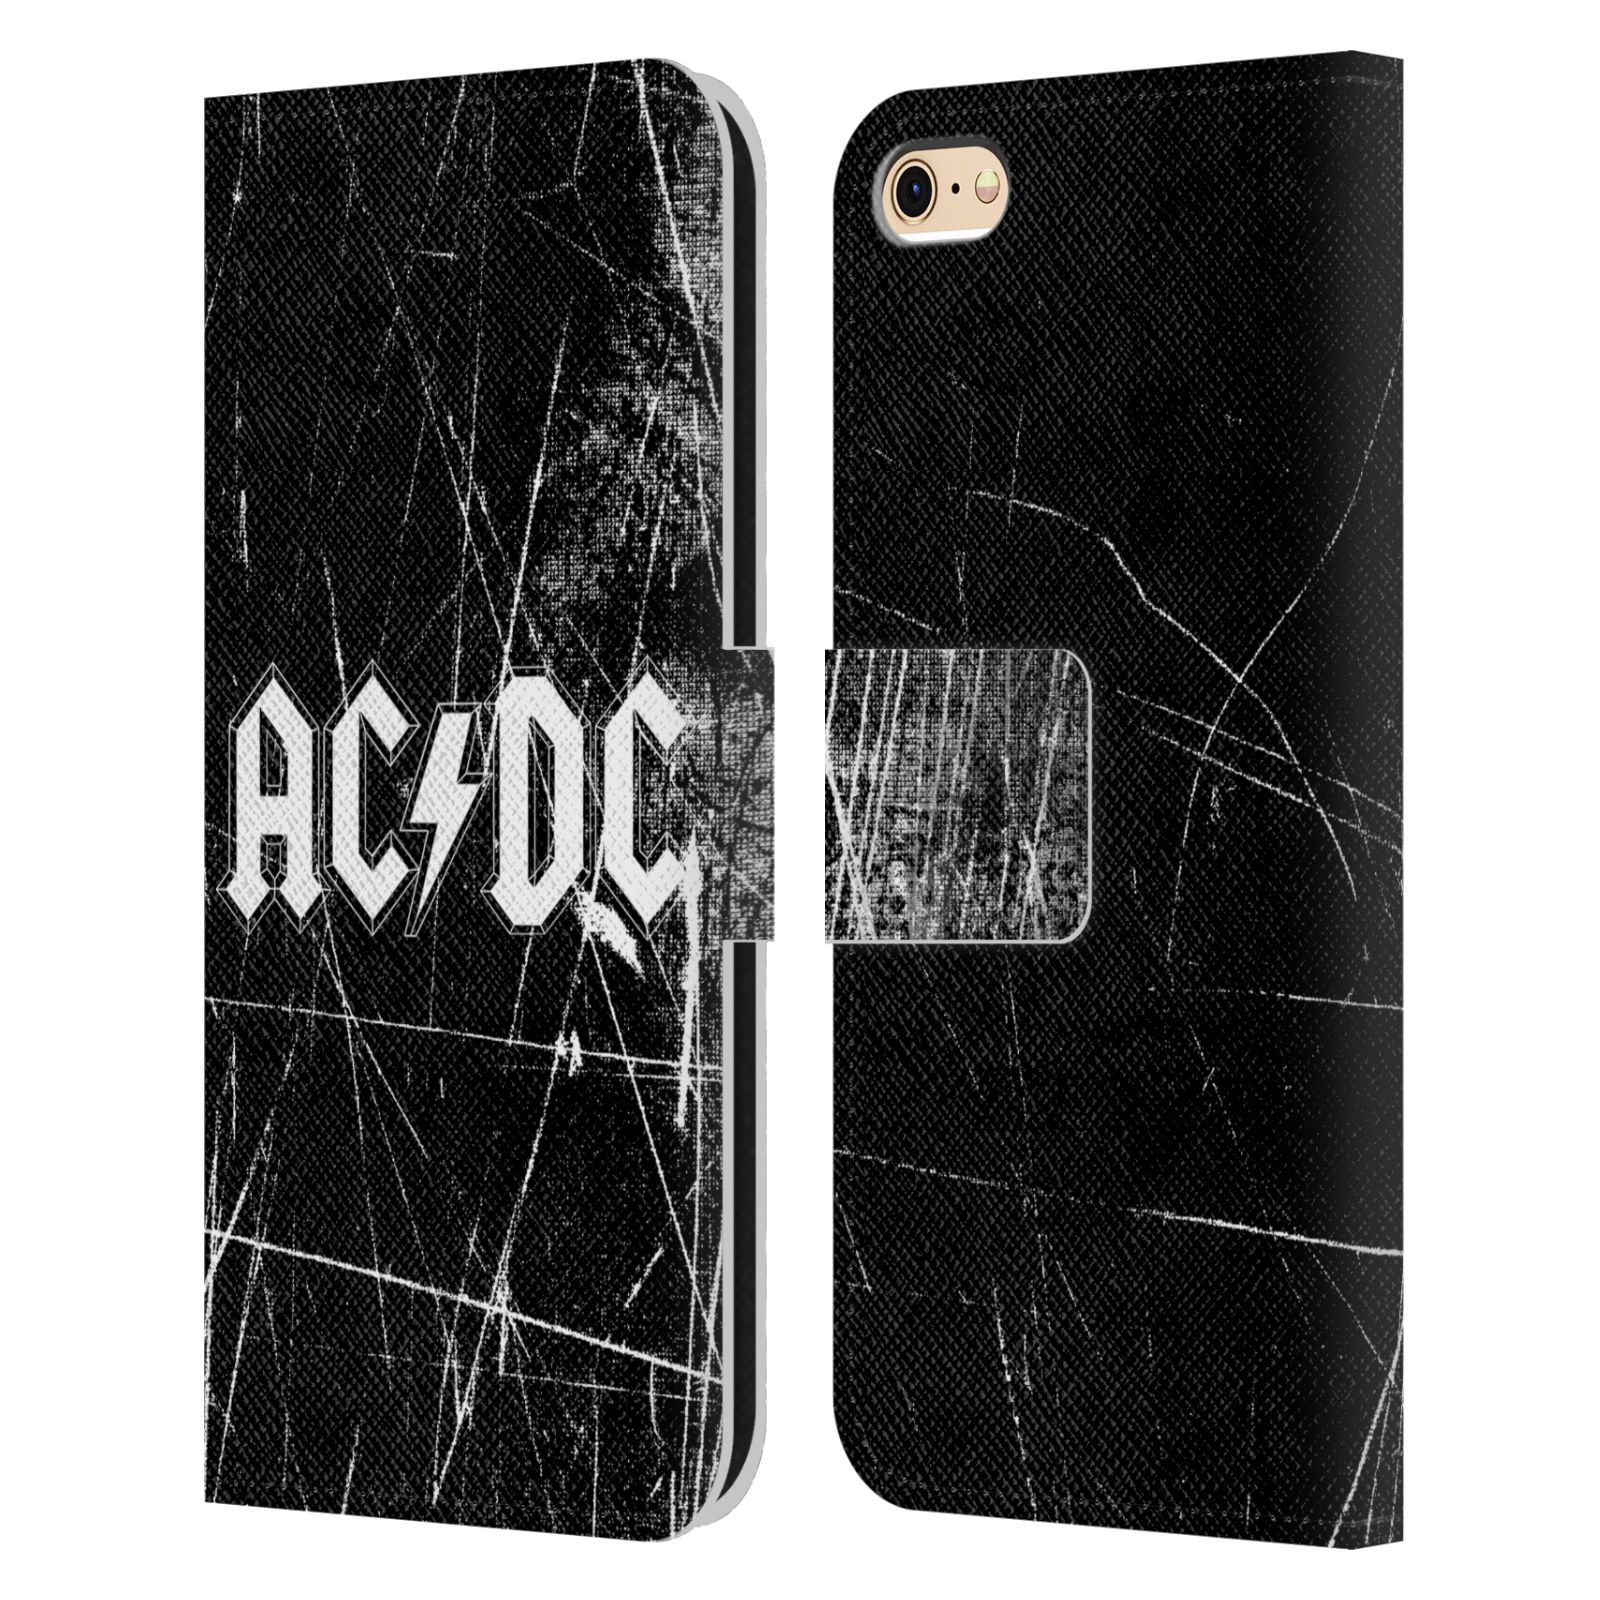 Pouzdro na mobil Apple Iphone 6 / 6S - HEAD CASE - Rocková skupin ACDC - černobílý nadpis